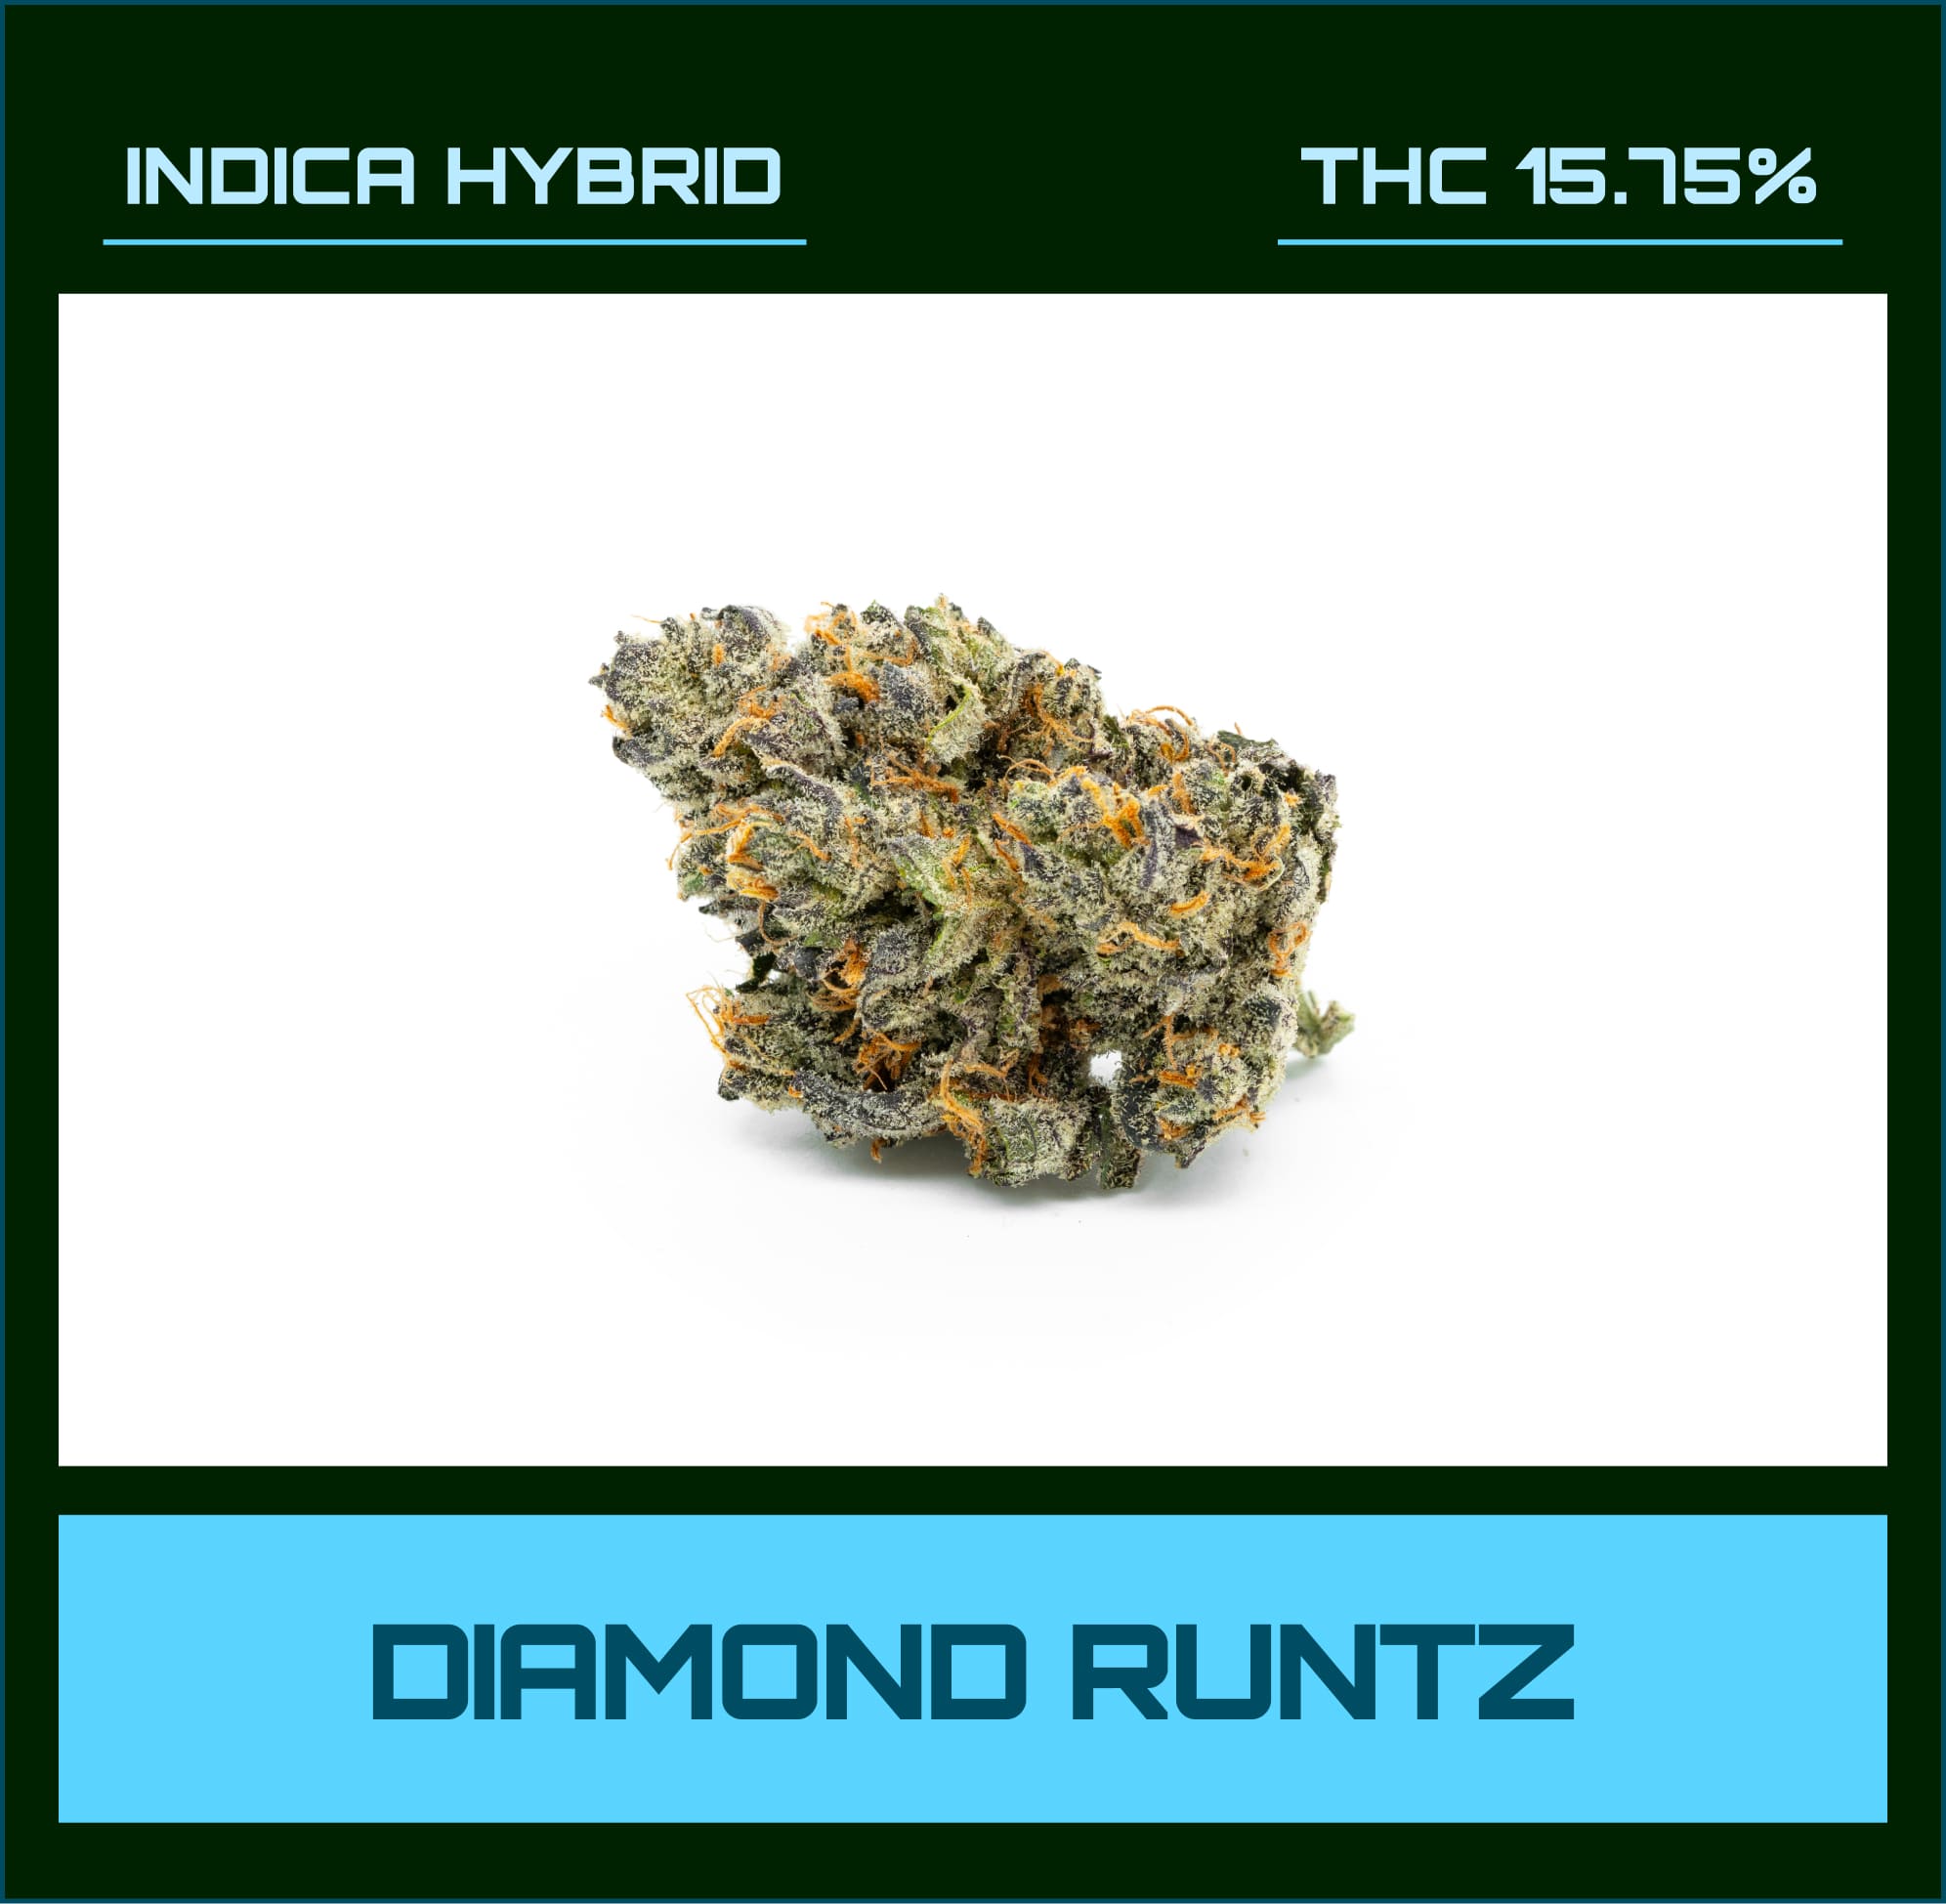 Diamond Runtz